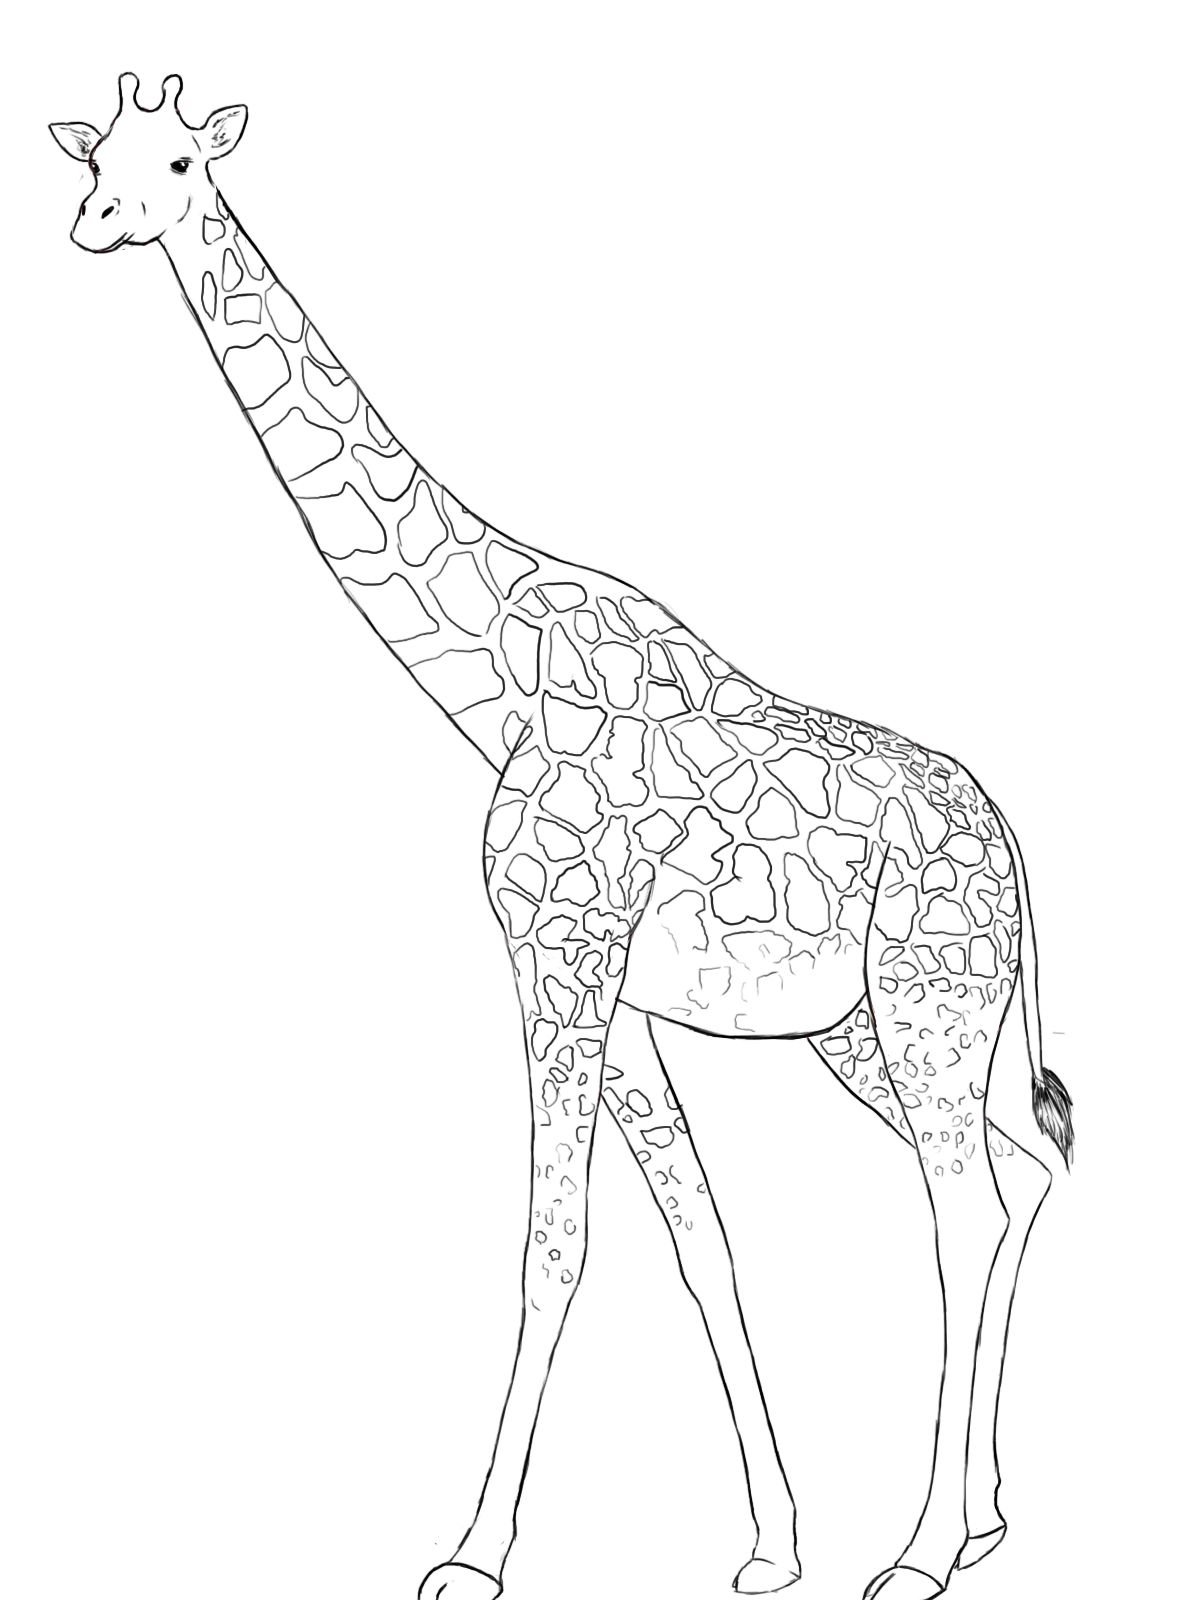 Срисовка жирафа